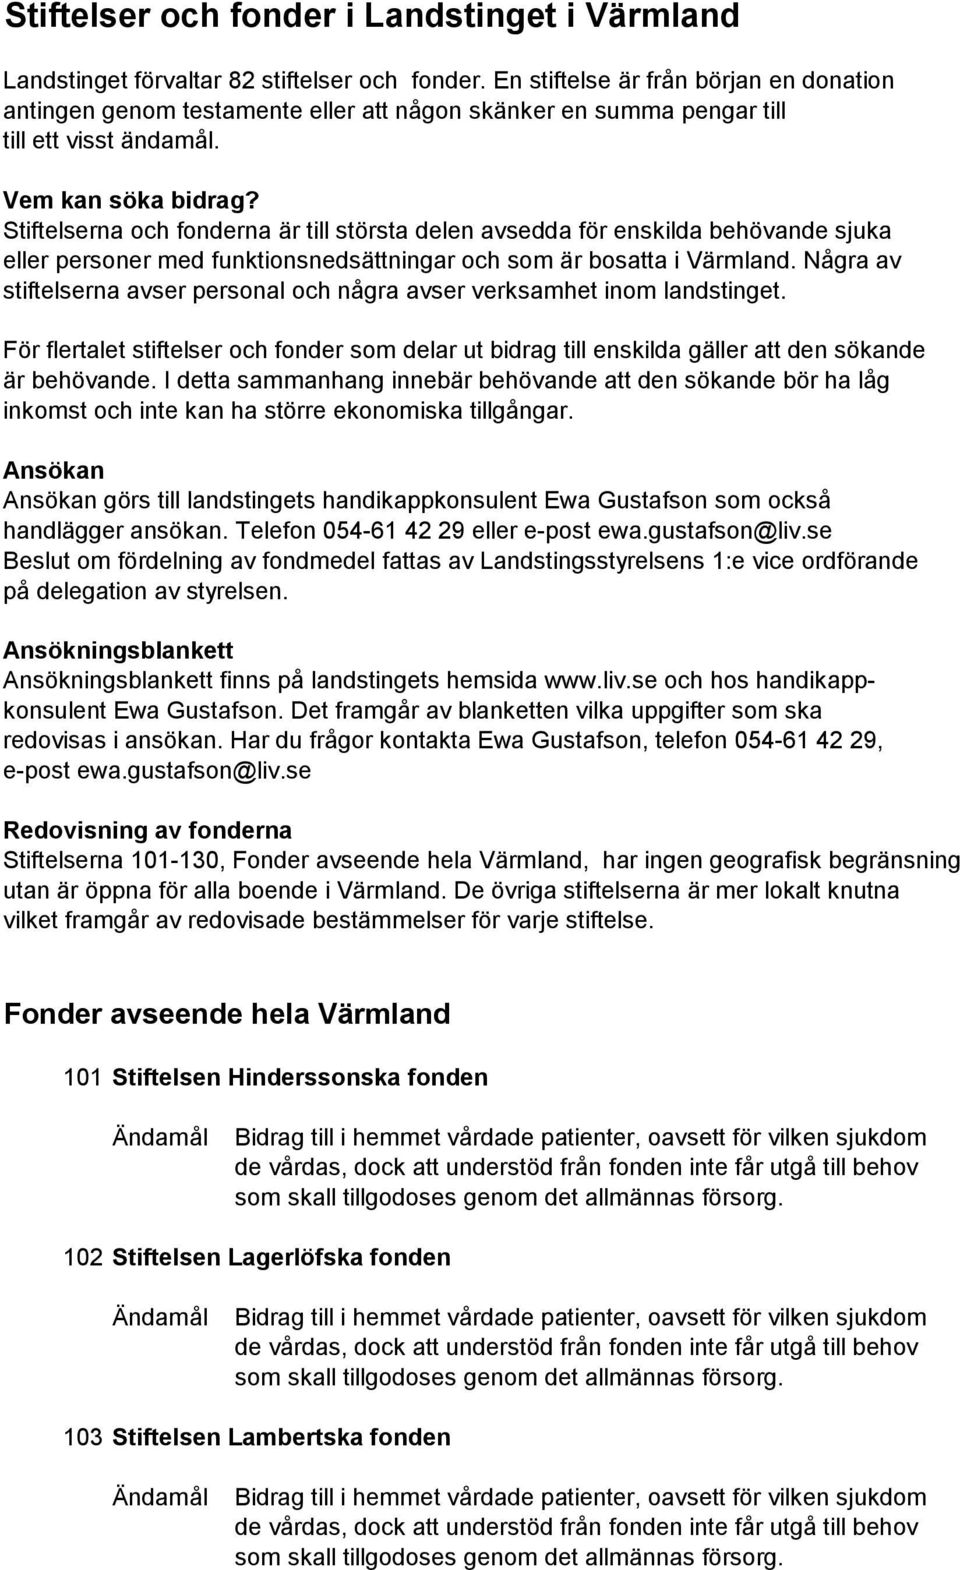 Stiftelser och fonder i Landstinget i Värmland - PDF Gratis nedladdning